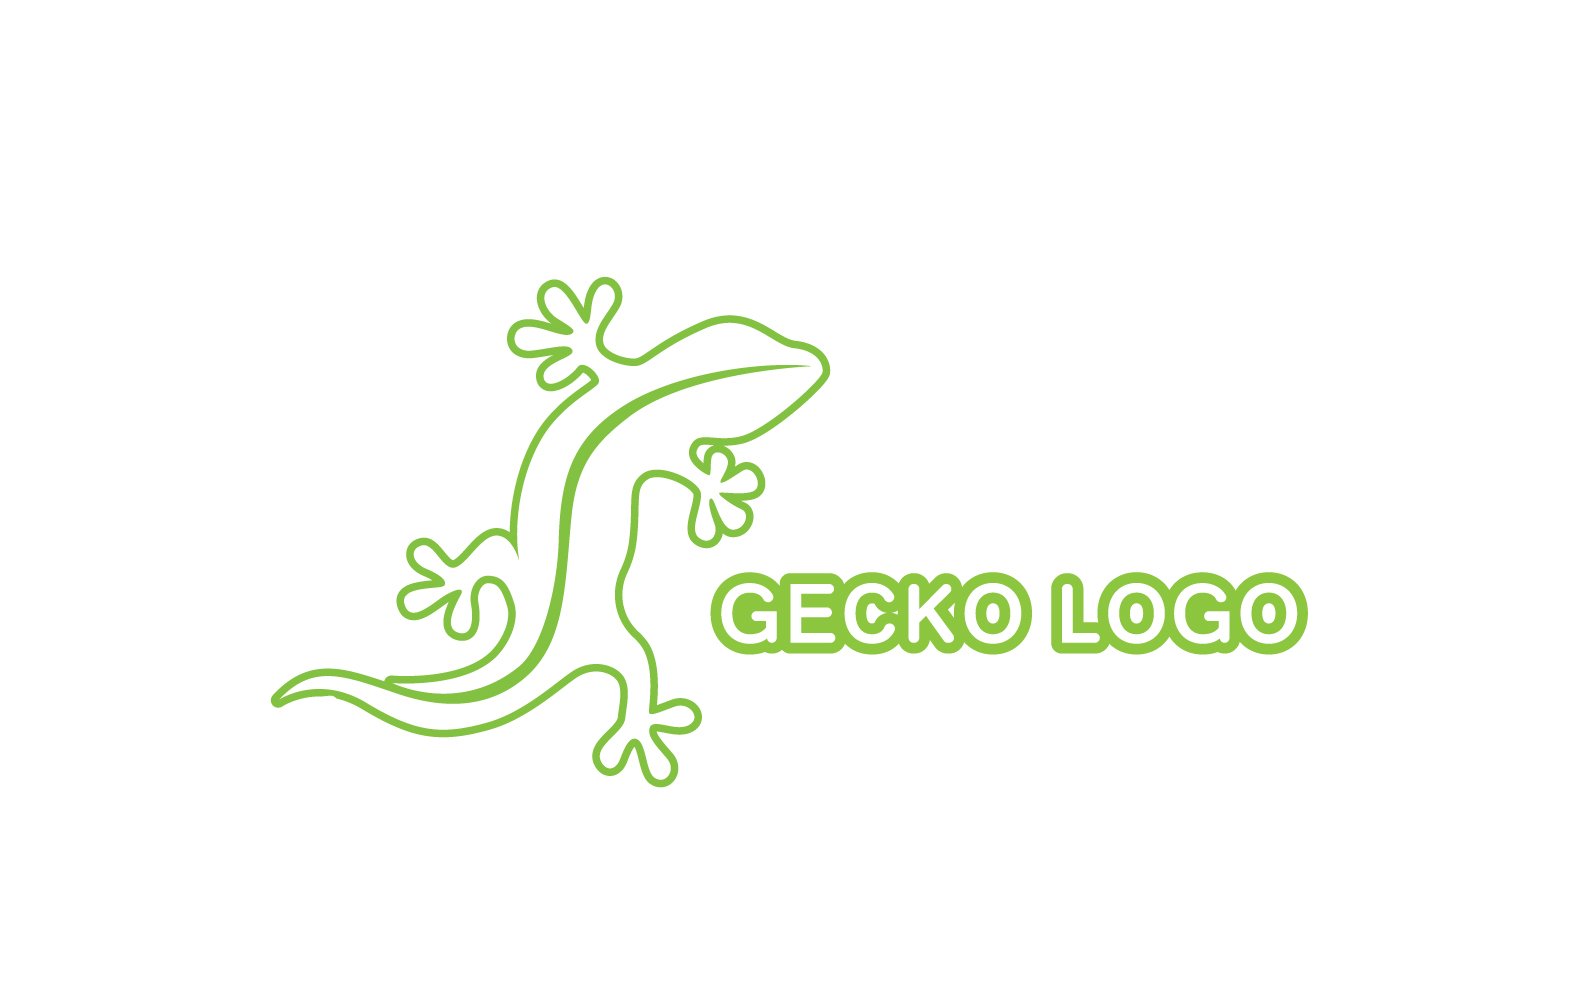 Kit Graphique #324526 Logo Gecko Divers Modles Web - Logo template Preview